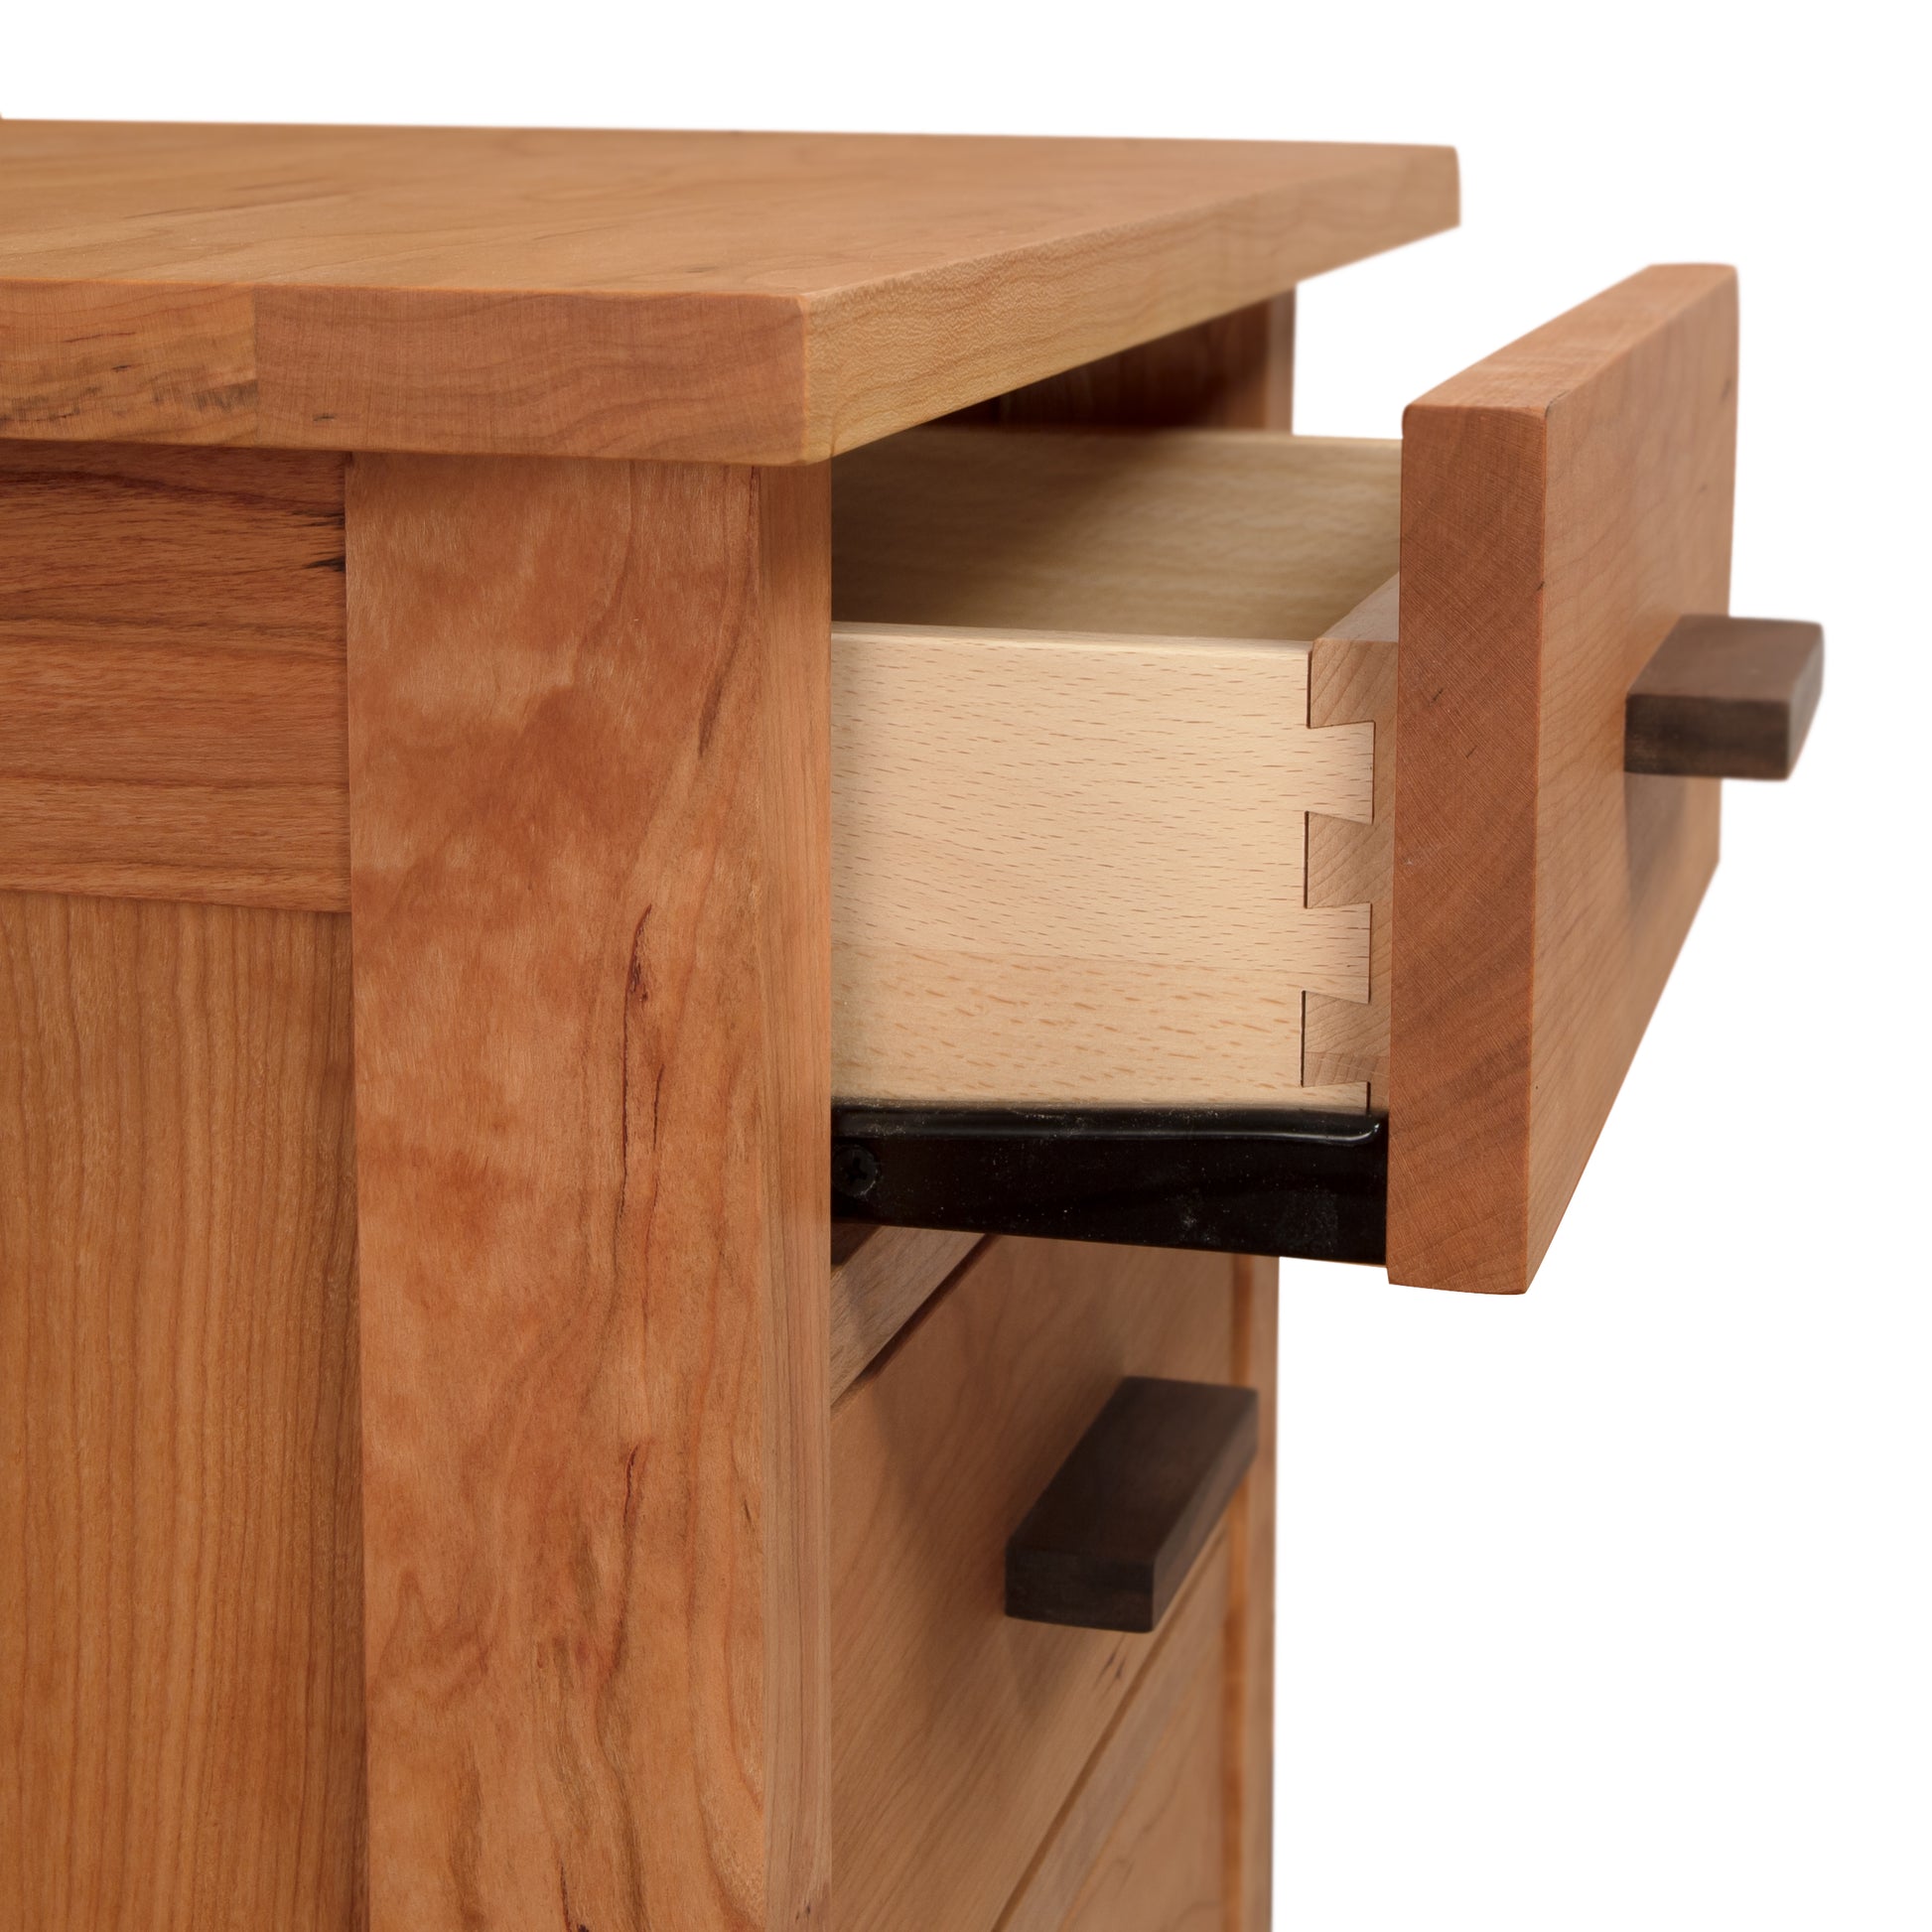 A Modern Craftsman 3-Drawer Nightstand by Vermont Furniture Designs.